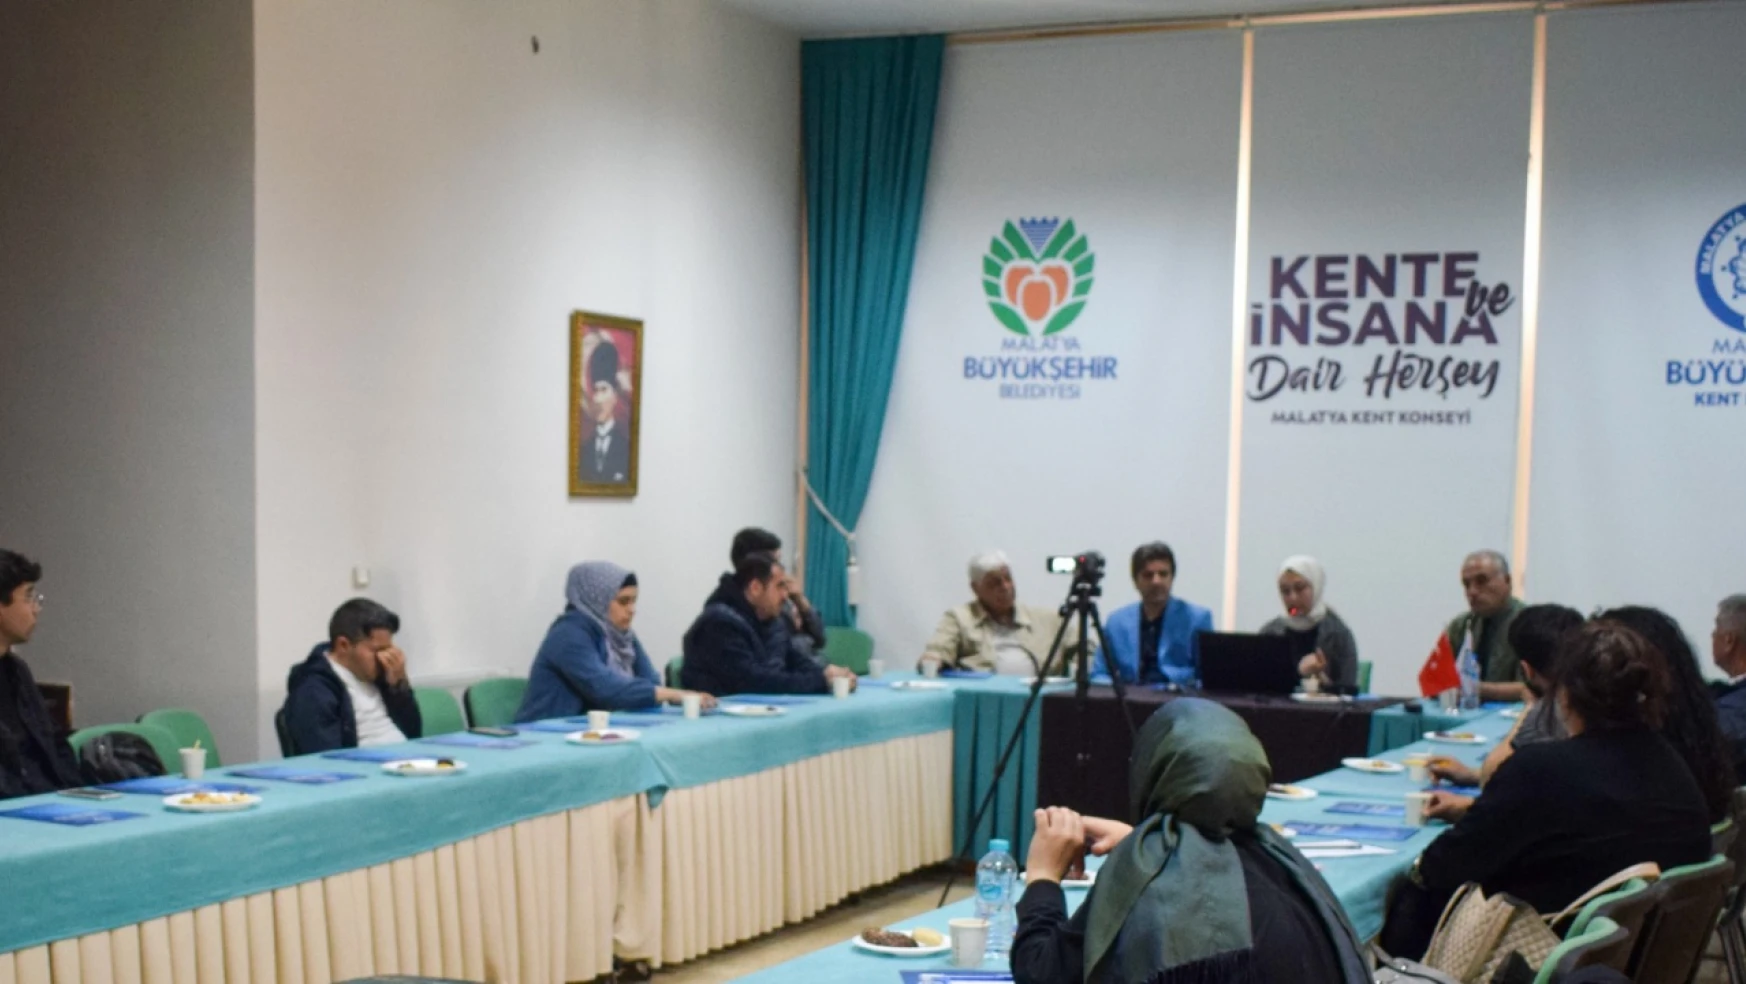 Malatya Kent Konseyi 'Hamit Fendoğlu' Anısına Program Düzenledi